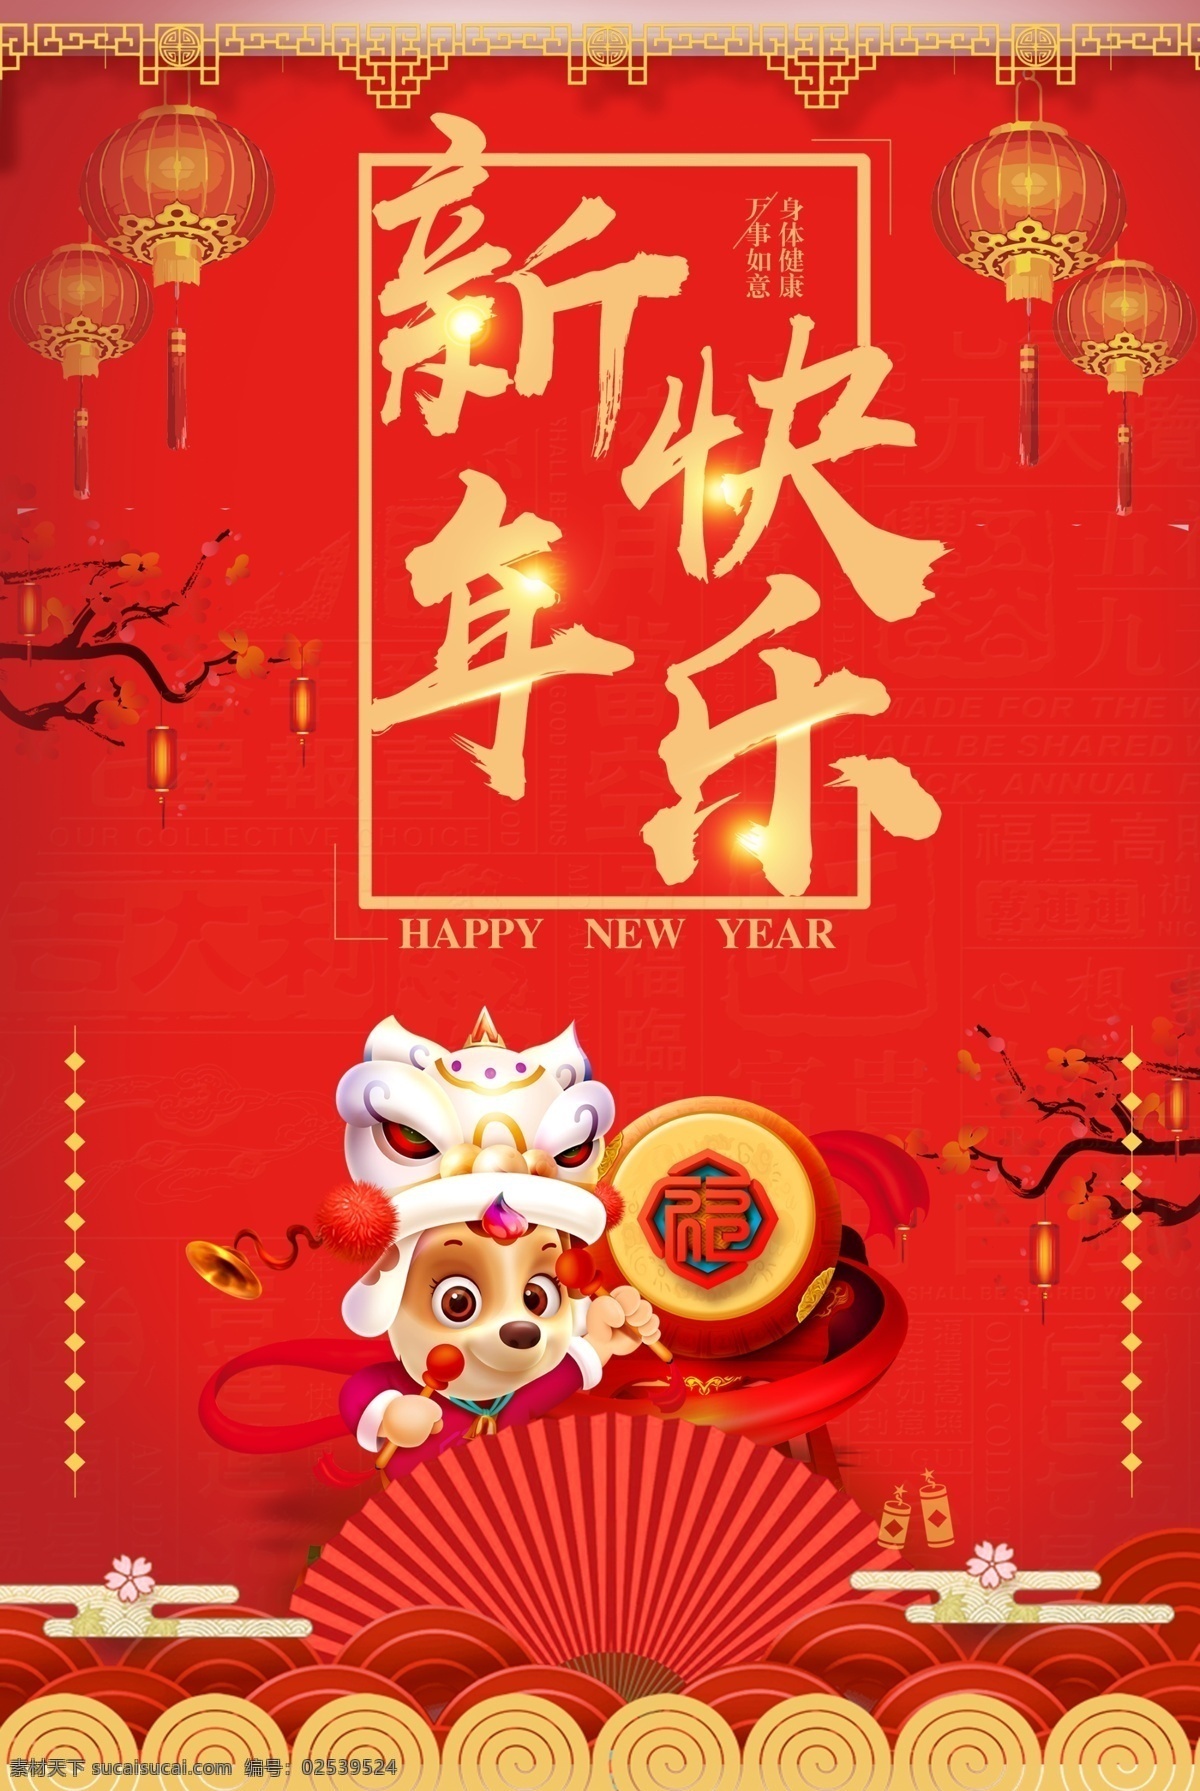 新春 喜庆 红色 节日 海报 高清 设计图 节日海报 模板设计 新年